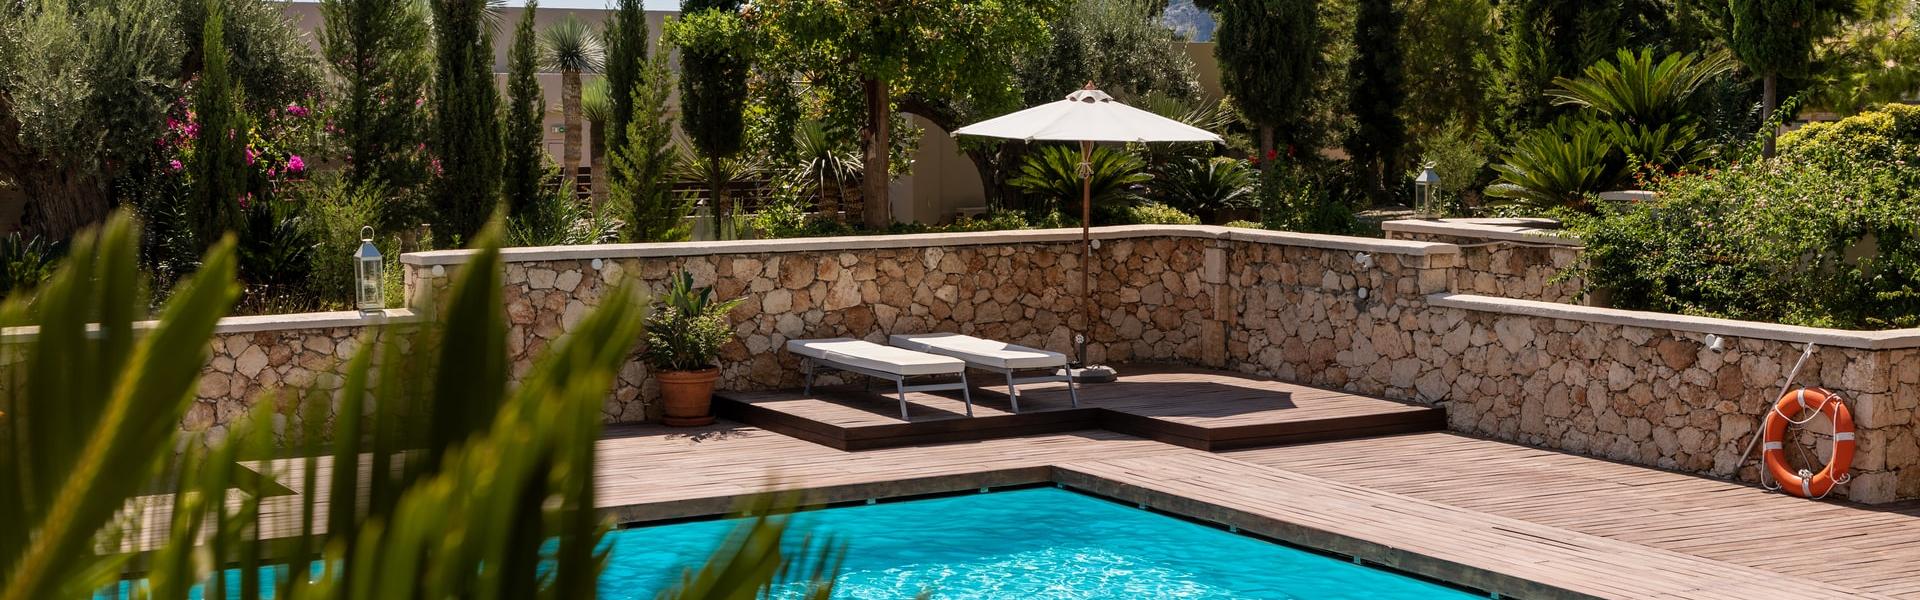 Ferienhaus mit Pool auf Sizilien - Wimdu